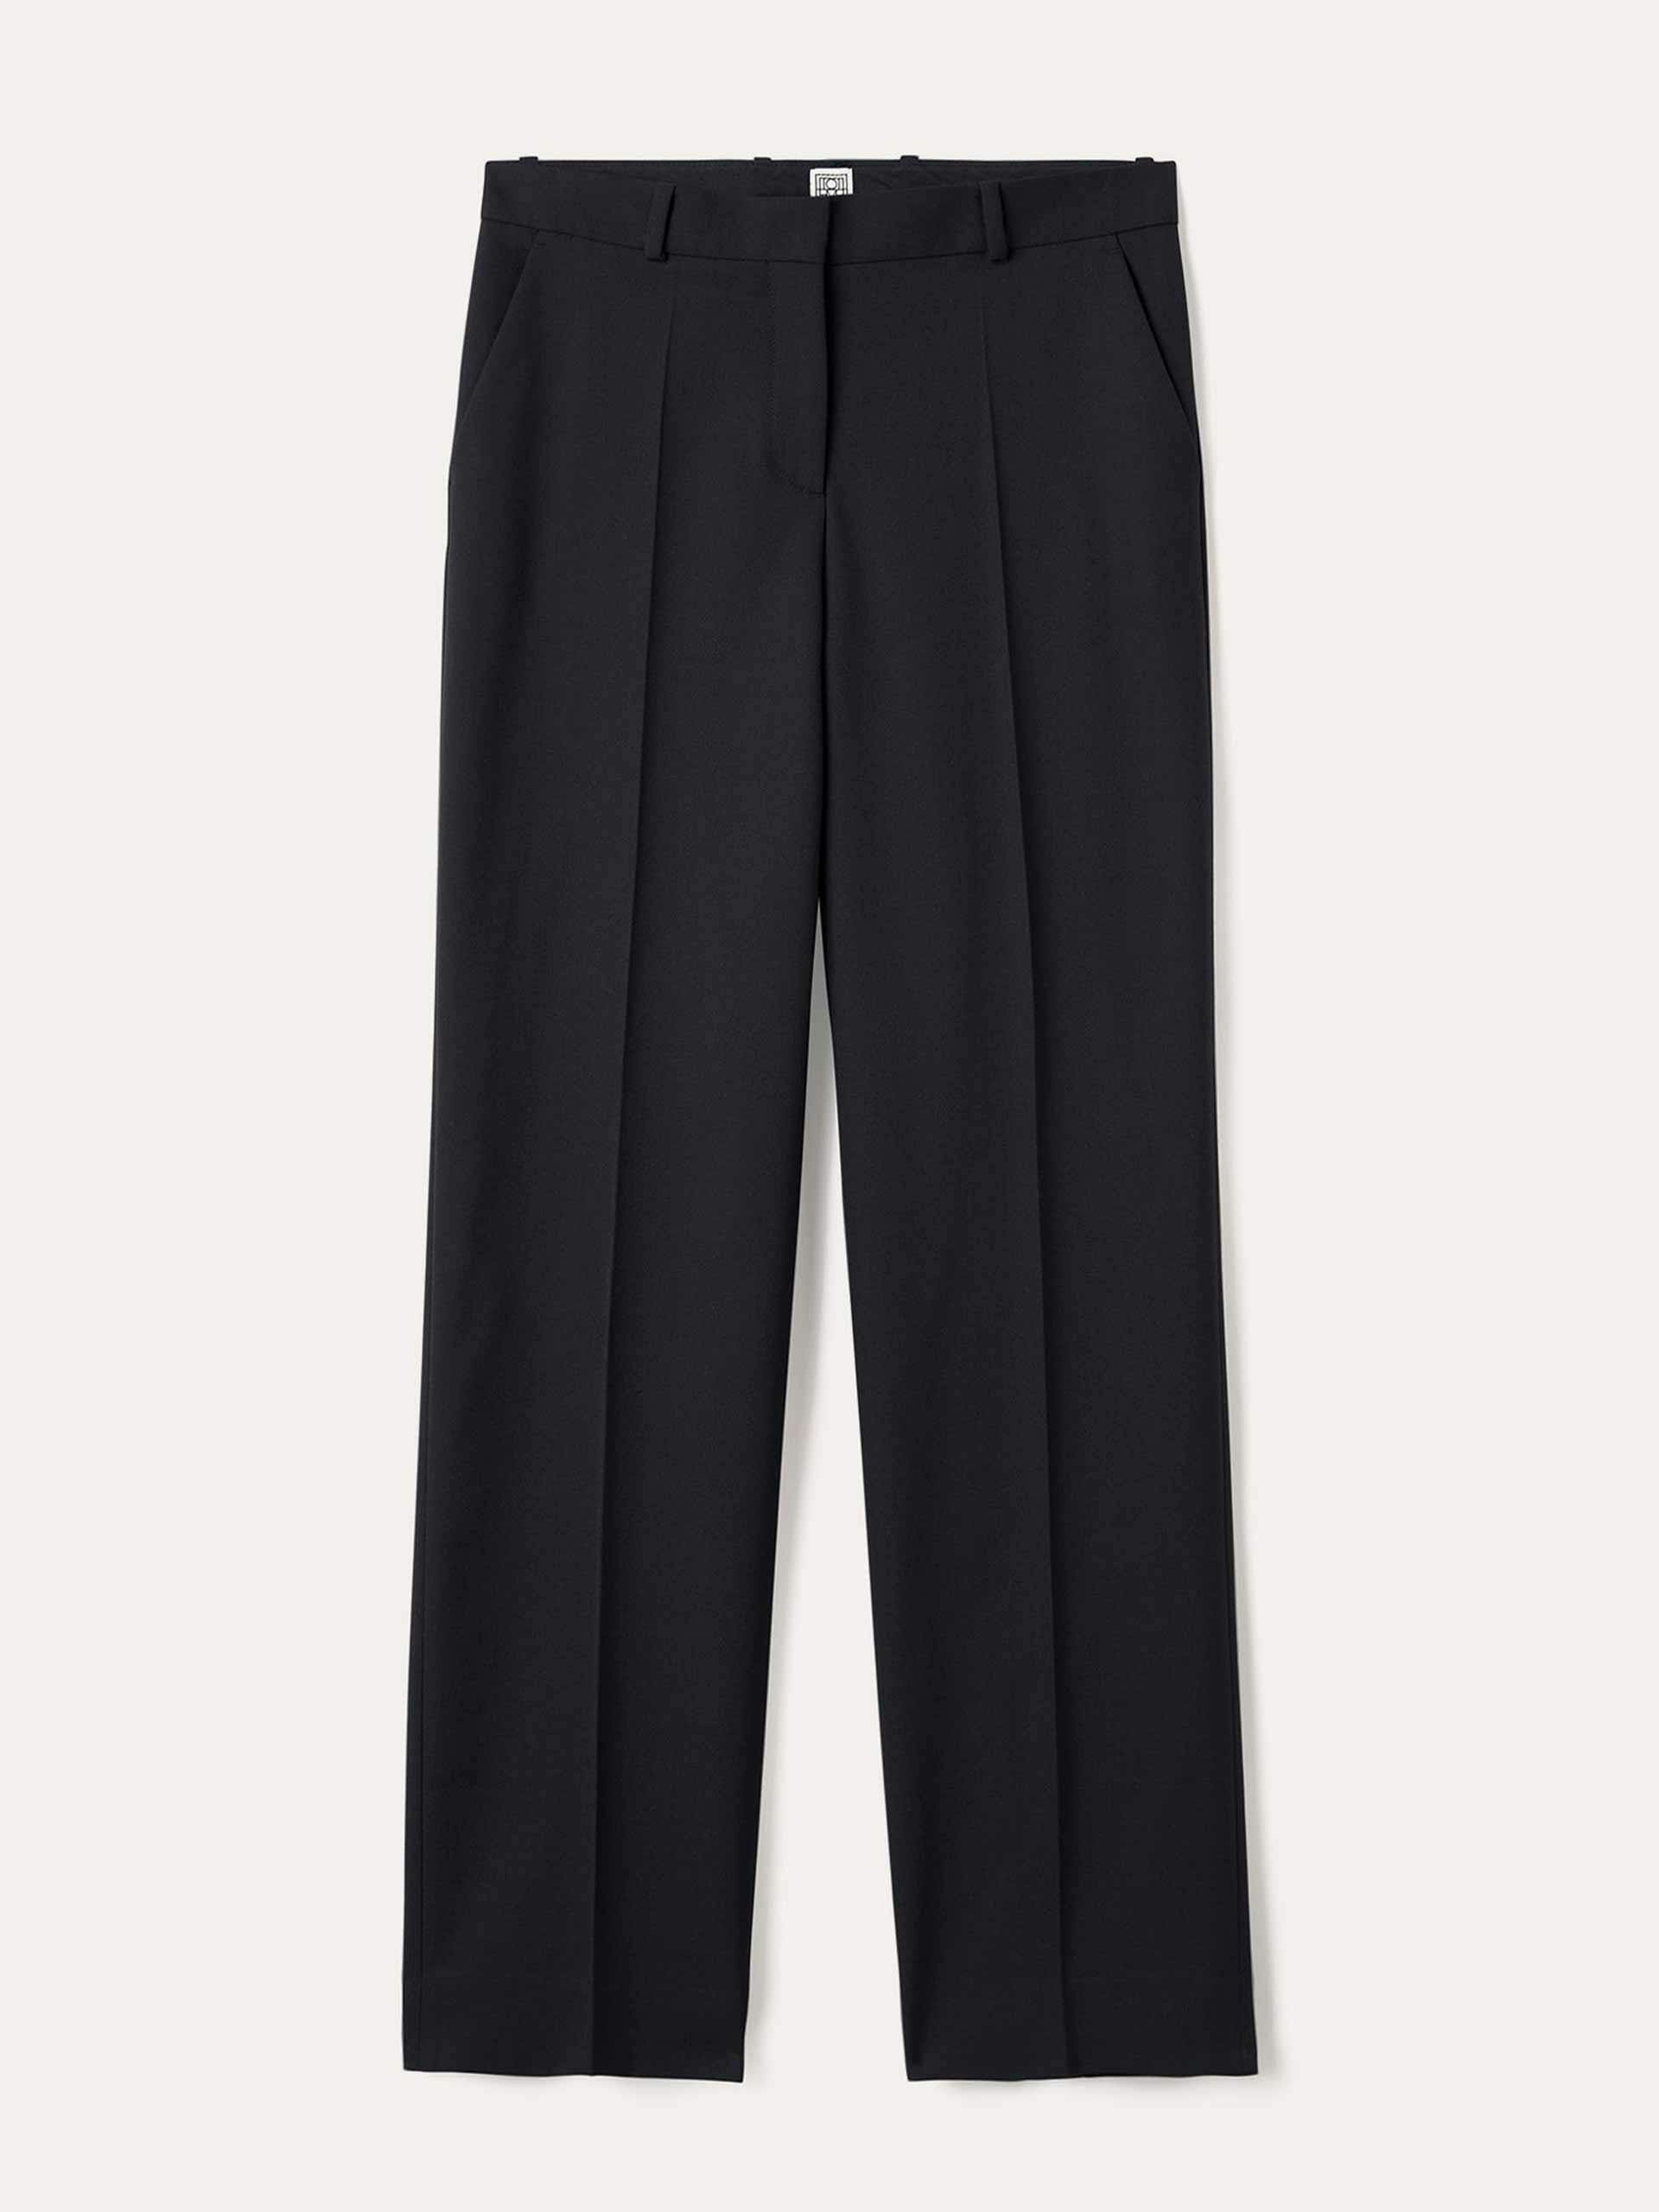 Mid-waist straight black trousers